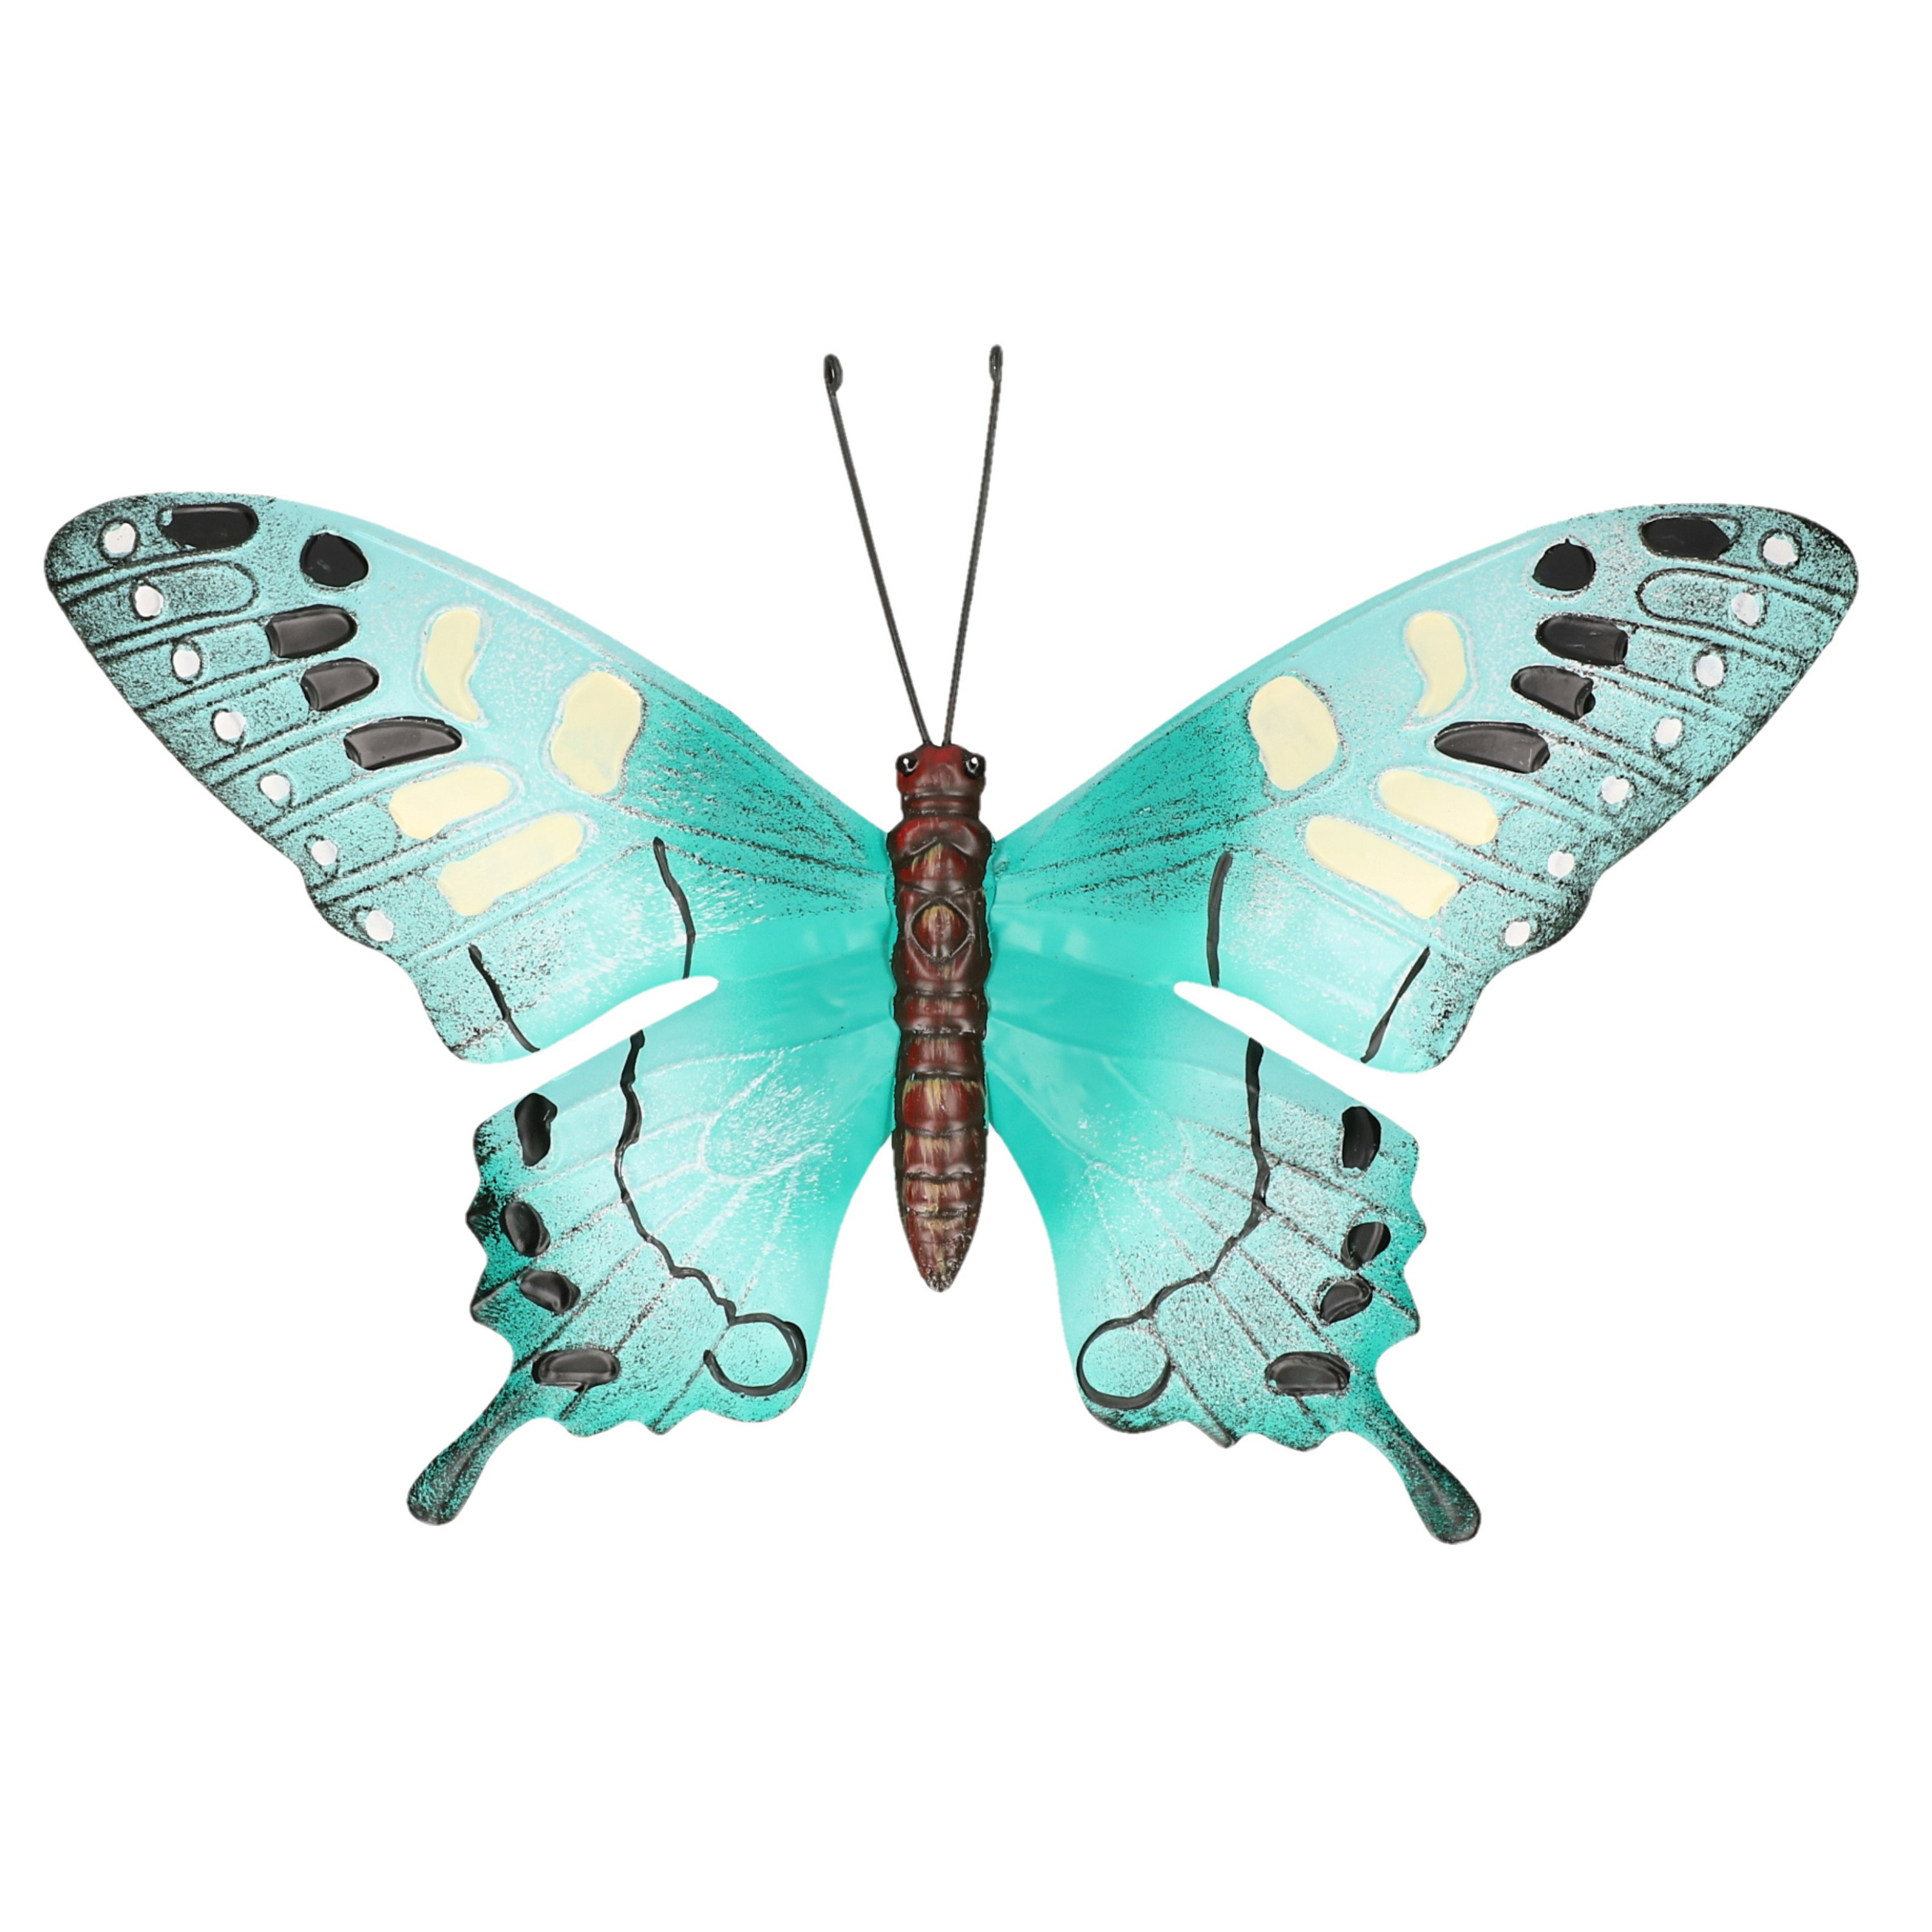 Tuindecoratie vlinder van metaal turquoise blauw-zwart 37 cm